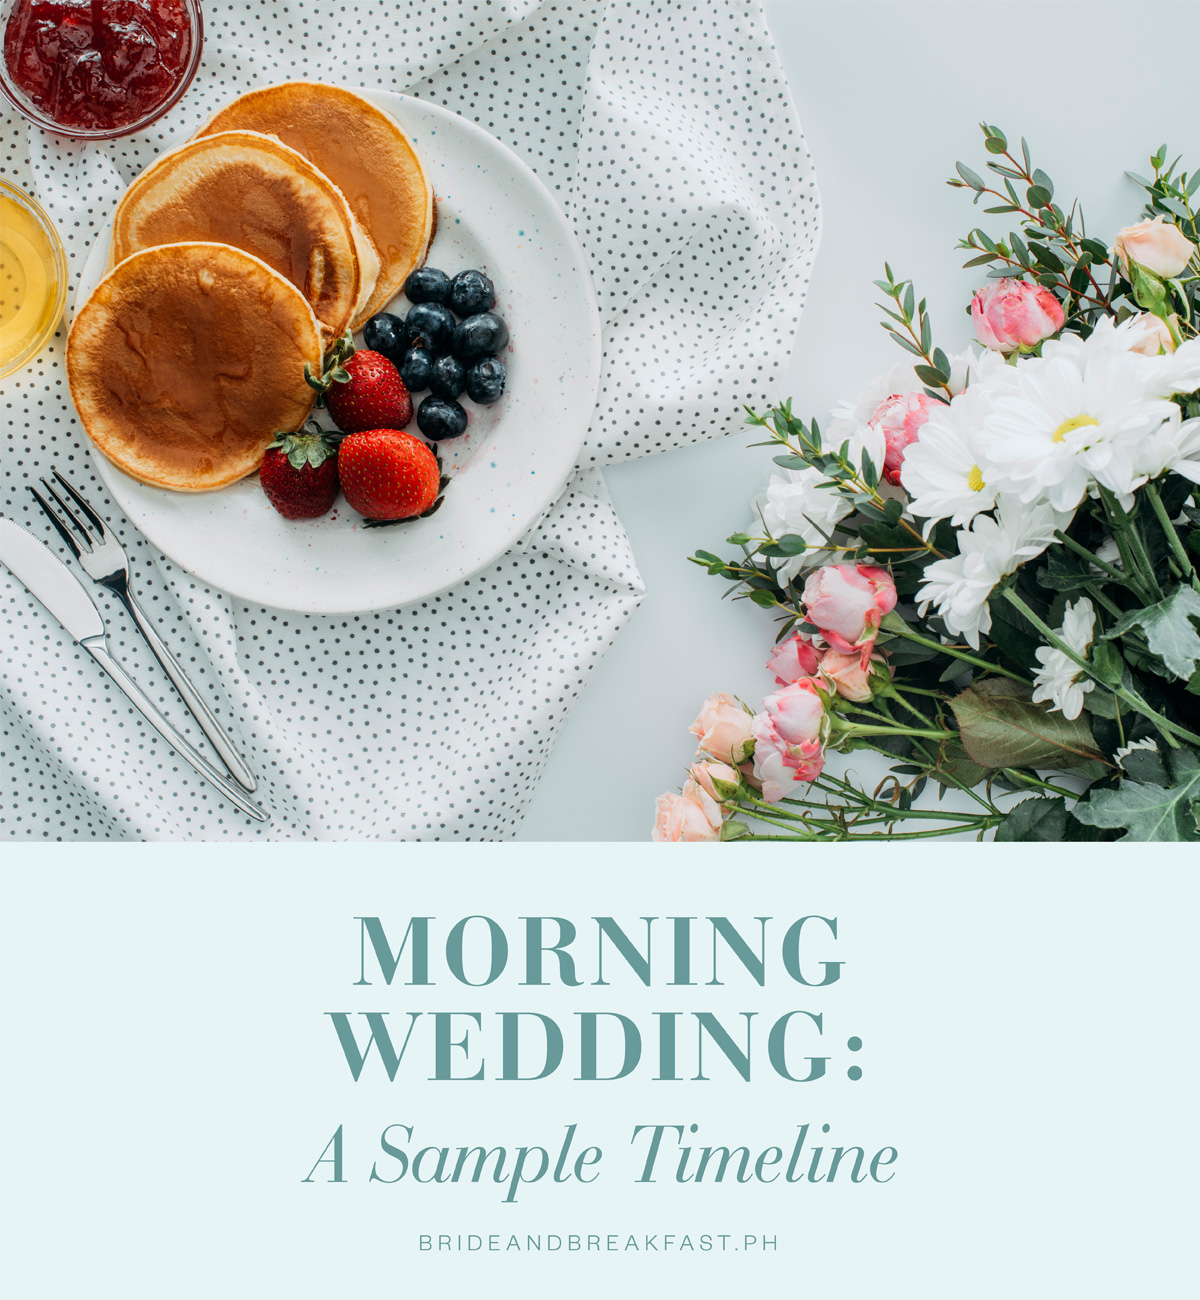 Morning Wedding: A Sample Timeline